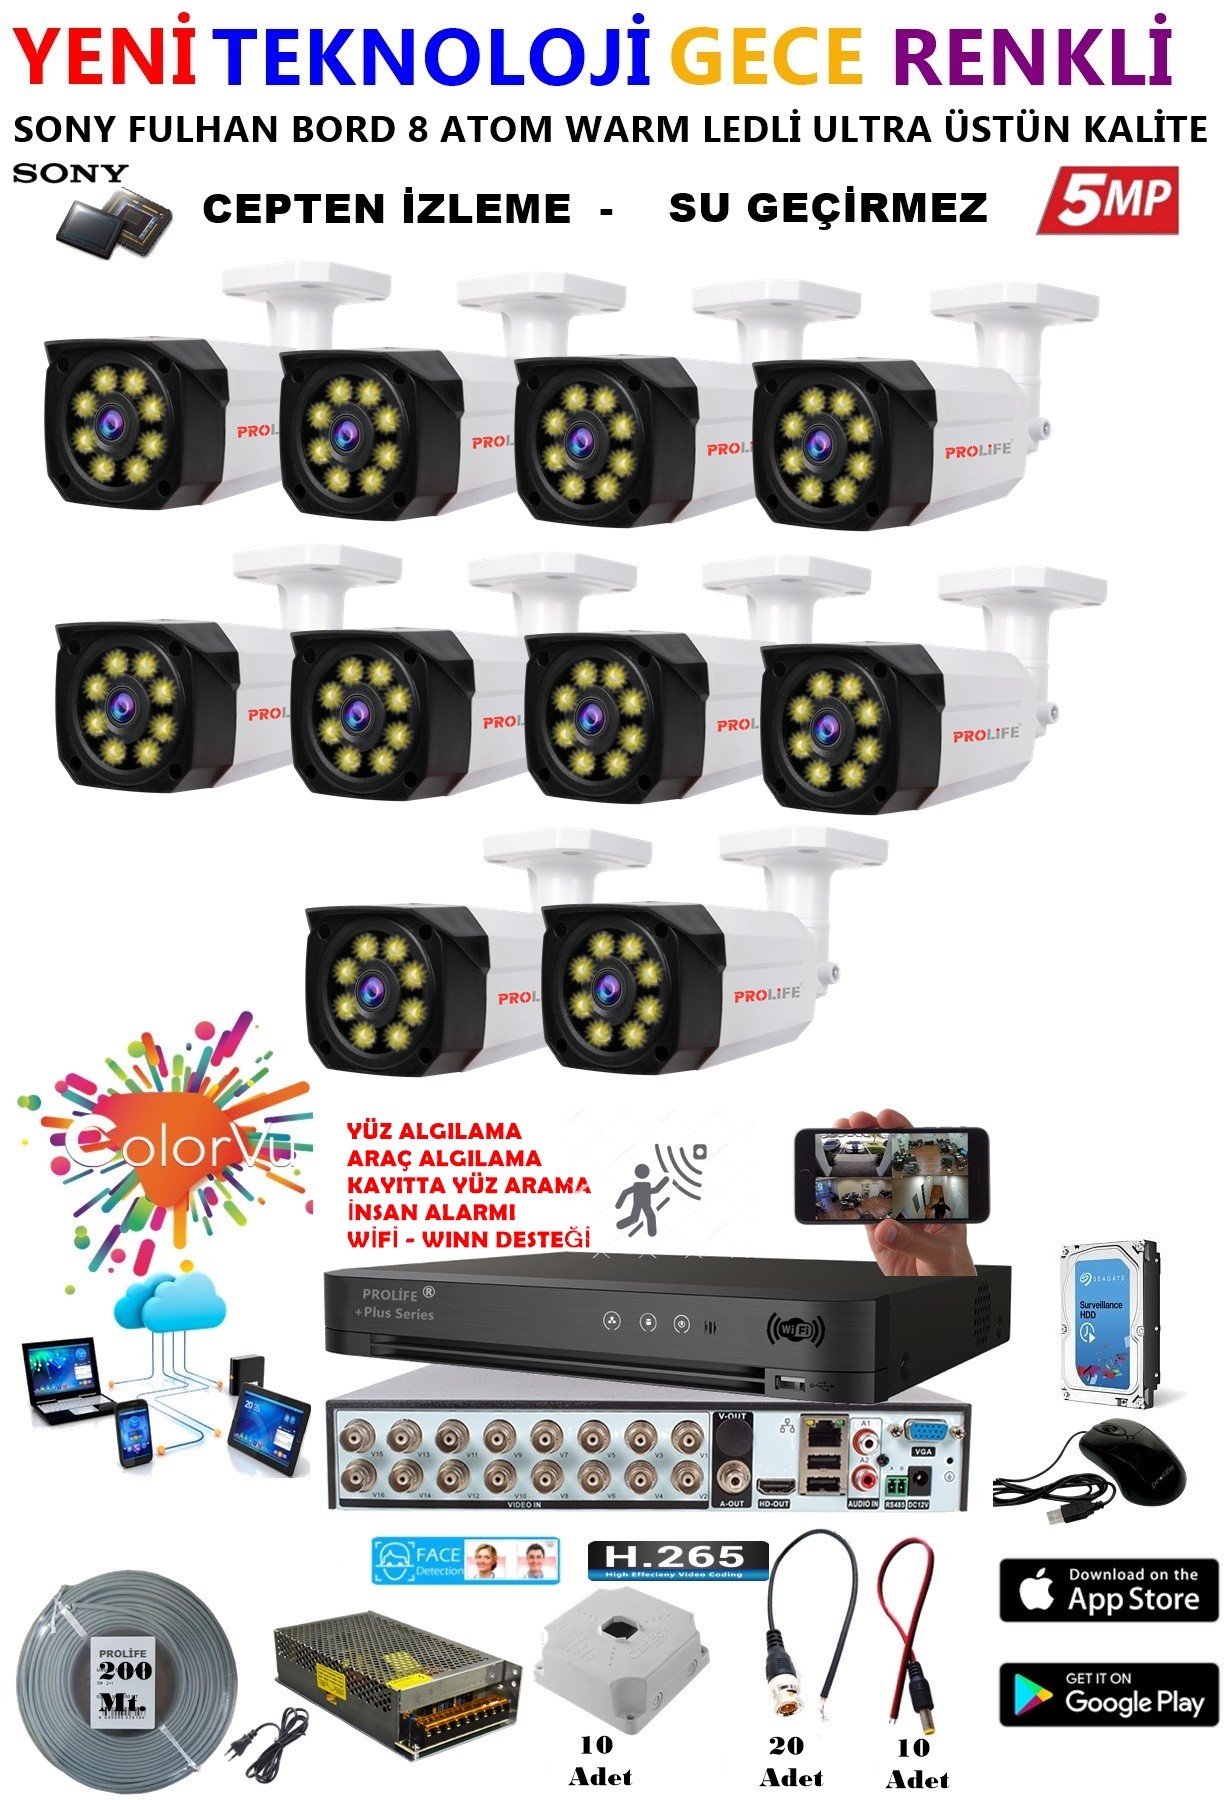 10 Kameralı 5 MP Gece Renkli Yapay Zeka Yüz ve Araç Algılamalı Olay Anı Bildirimli Kuruluma Hazır Kamera Seti